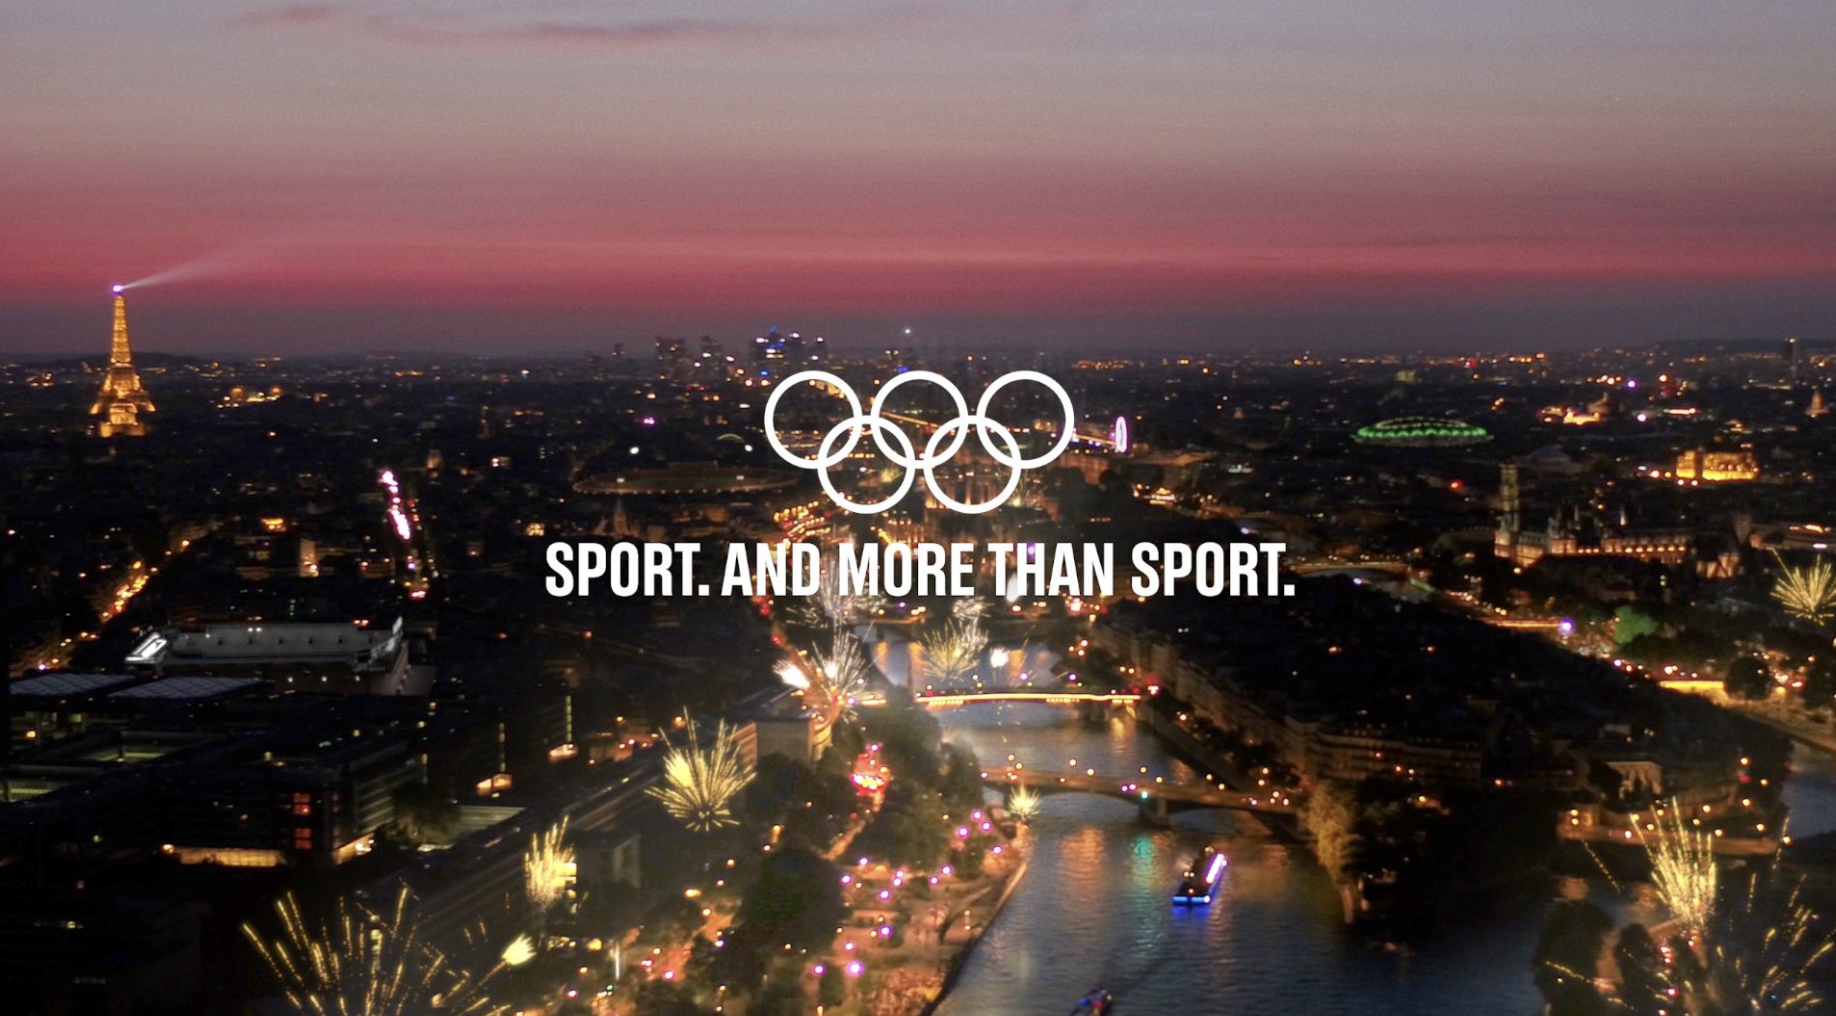 In aanloop naar Parijs 2024 lanceert IOC nieuwe merkcampagne